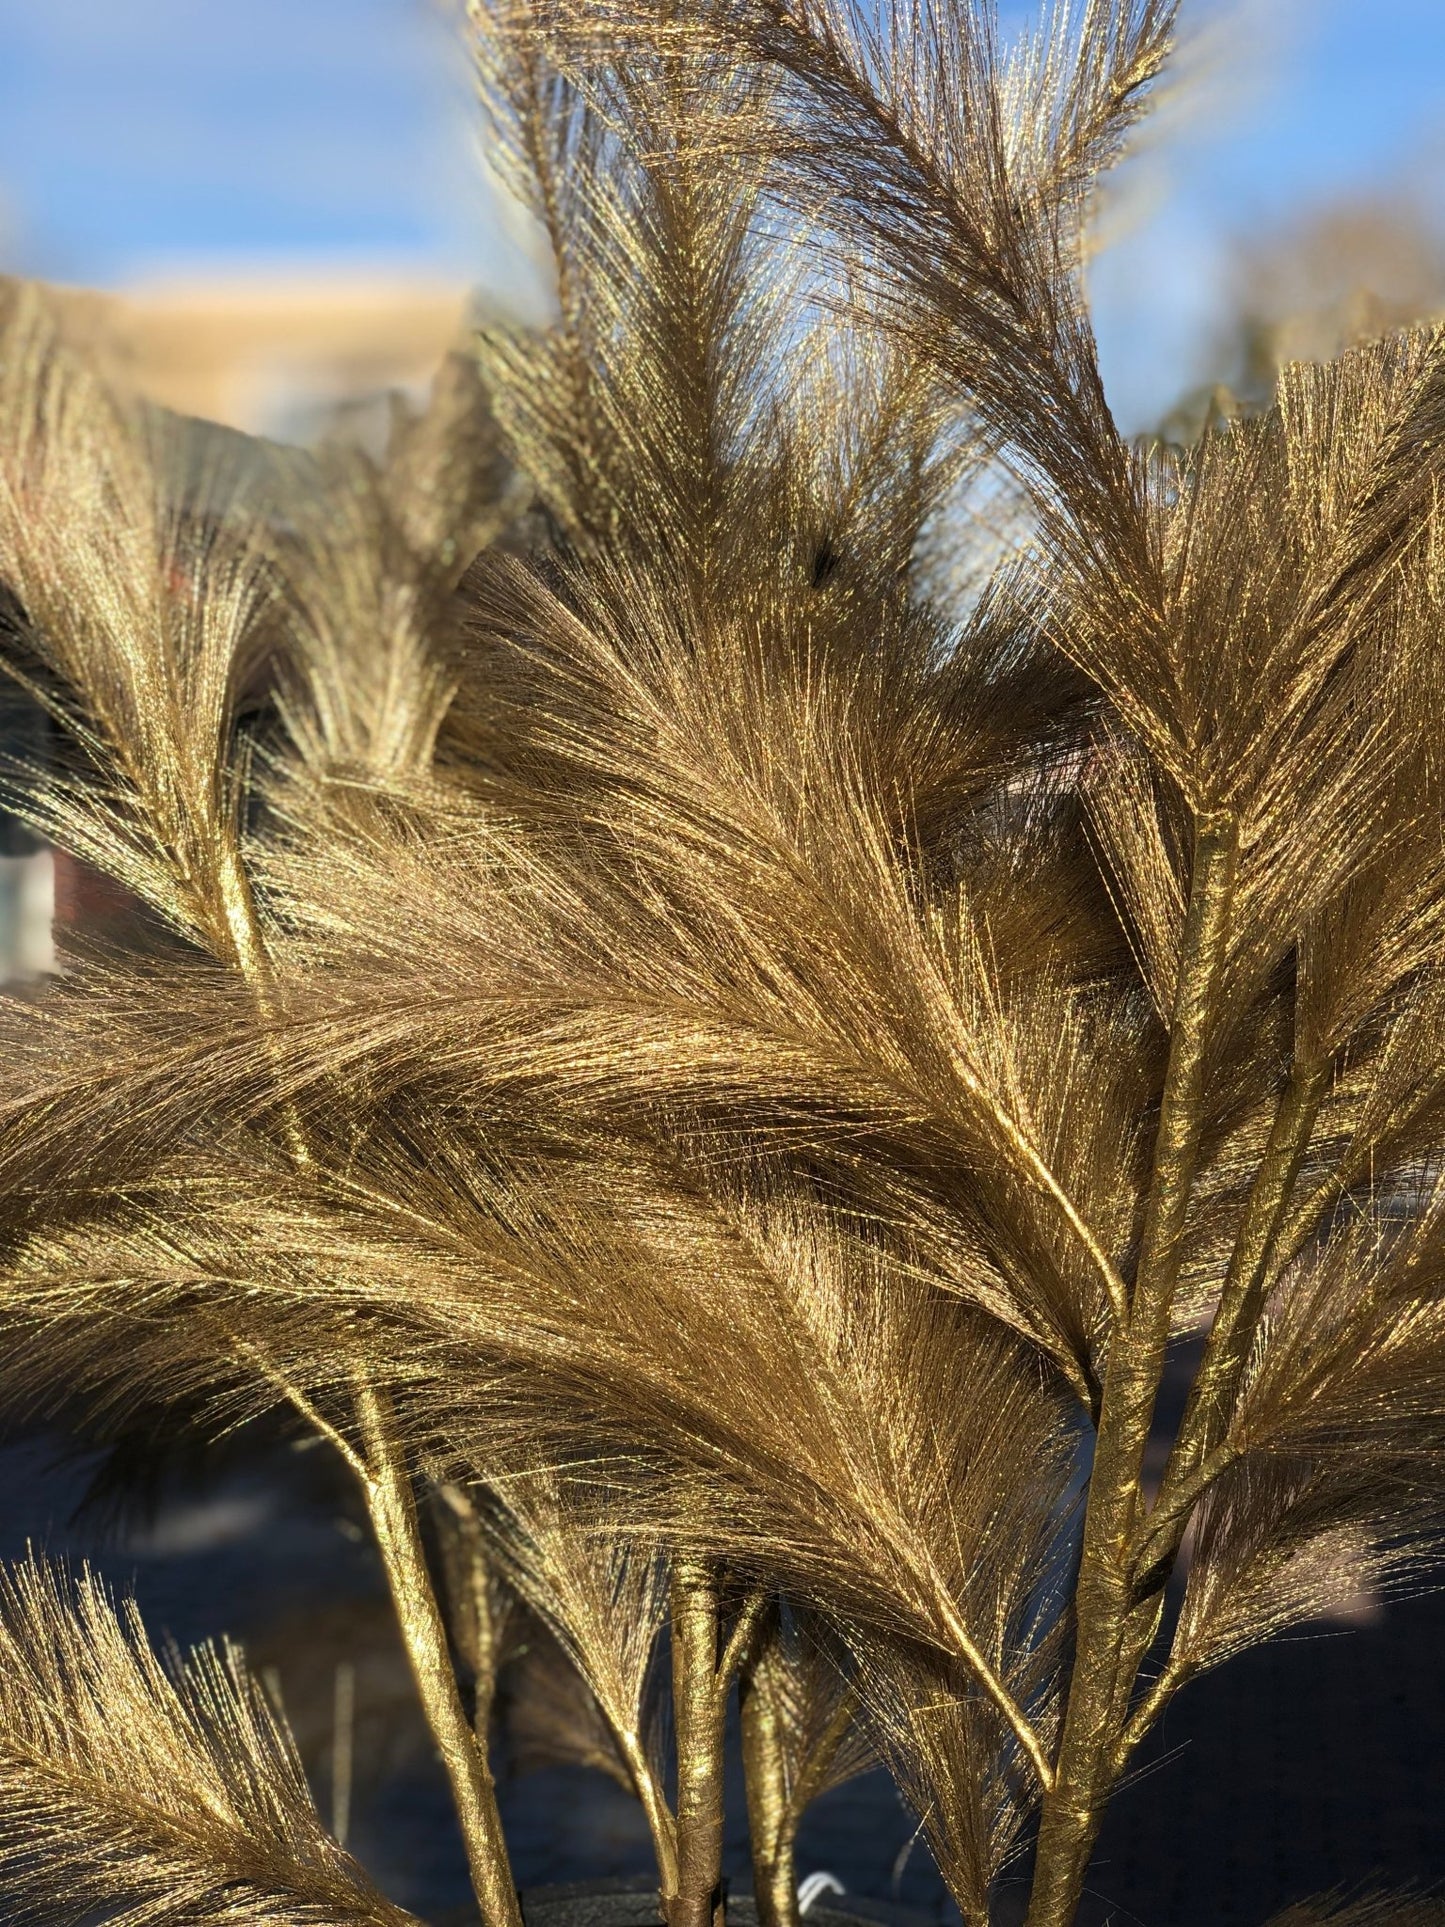 Panicle Grass Pluim | Goud Woonunique